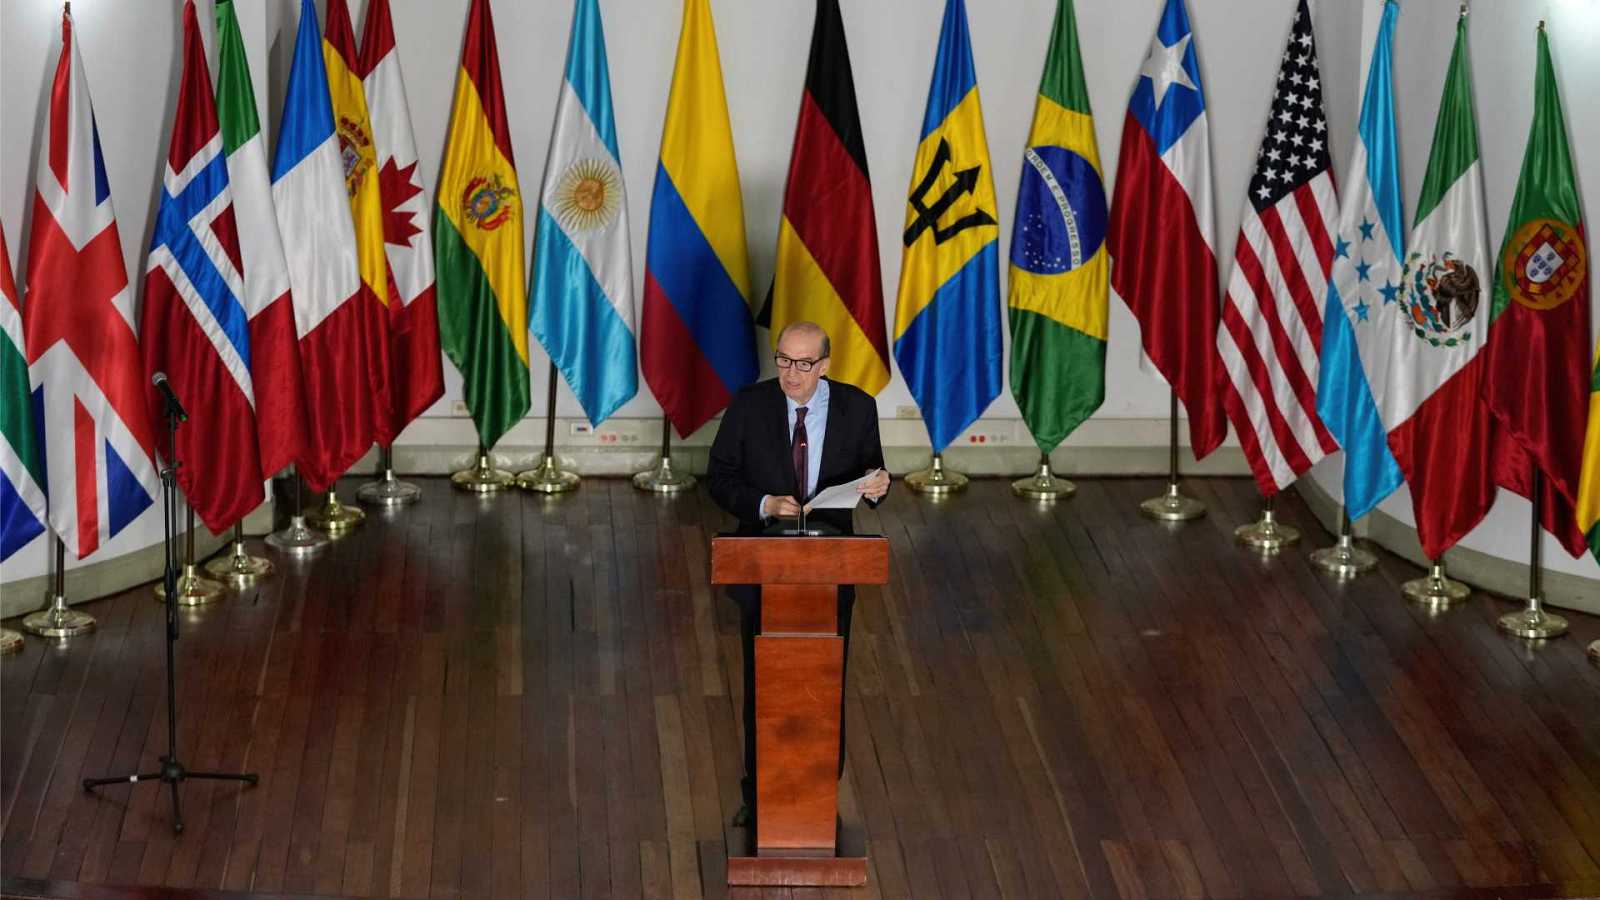 Conferencia Internacional sobre Venezuela insta a establecer elecciones libres en el país y a levantar sanciones